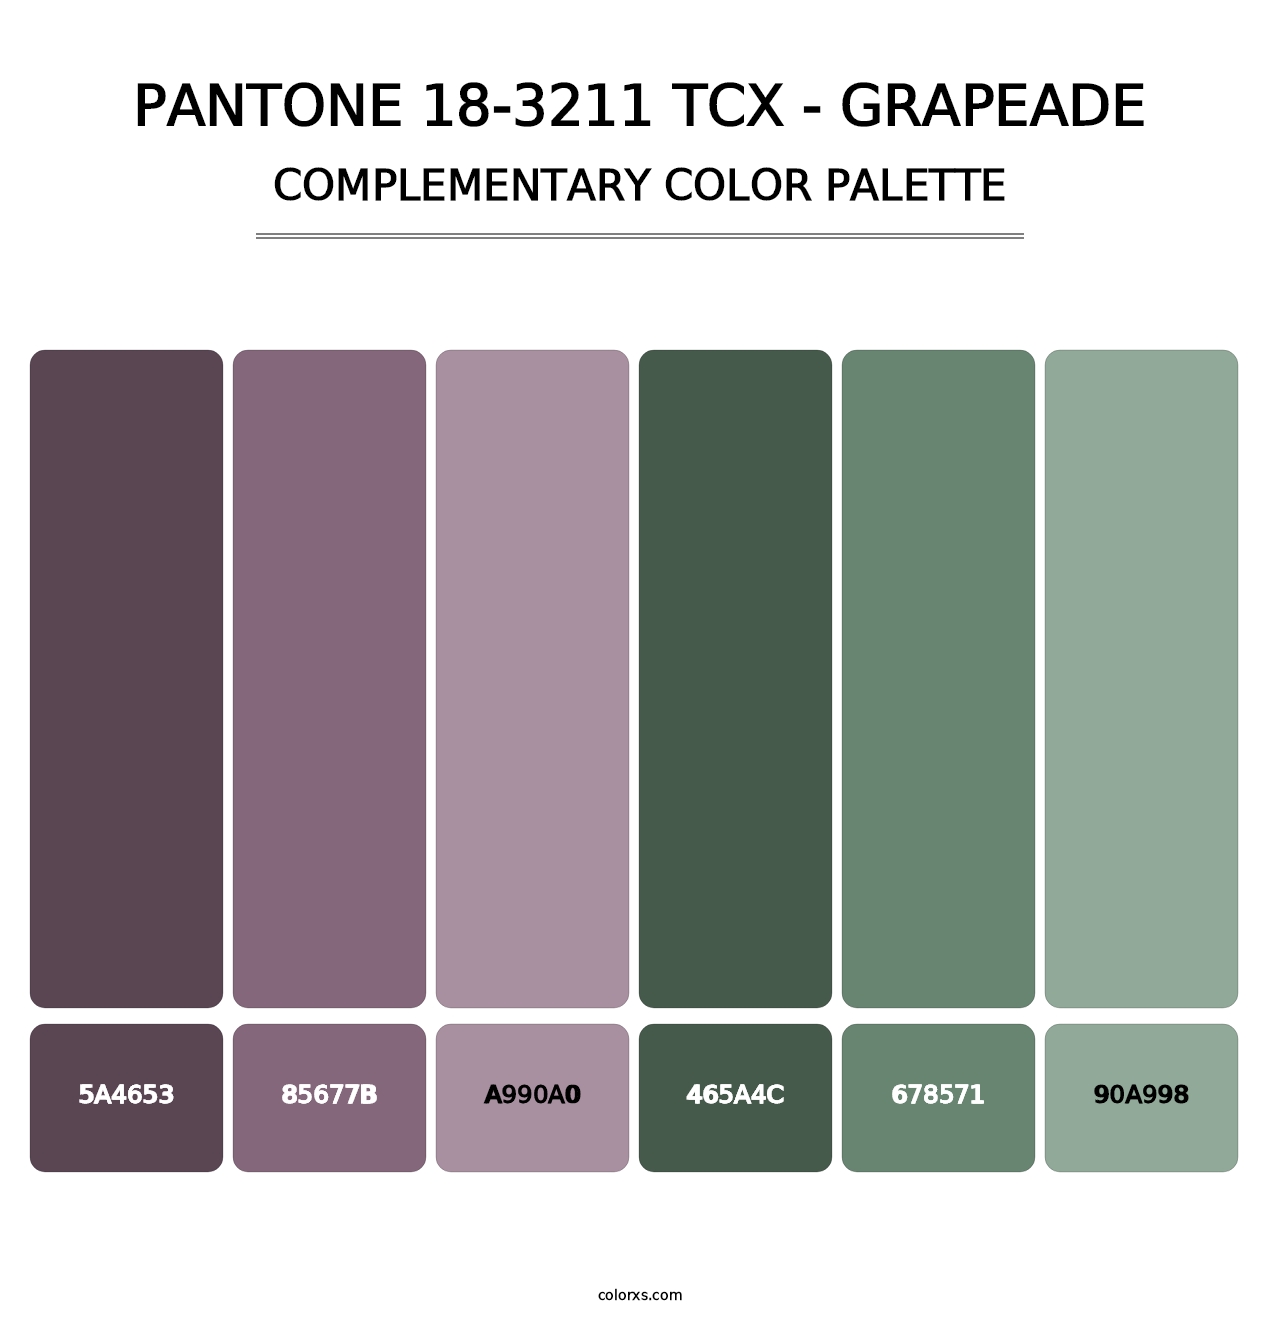 PANTONE 18-3211 TCX - Grapeade - Complementary Color Palette